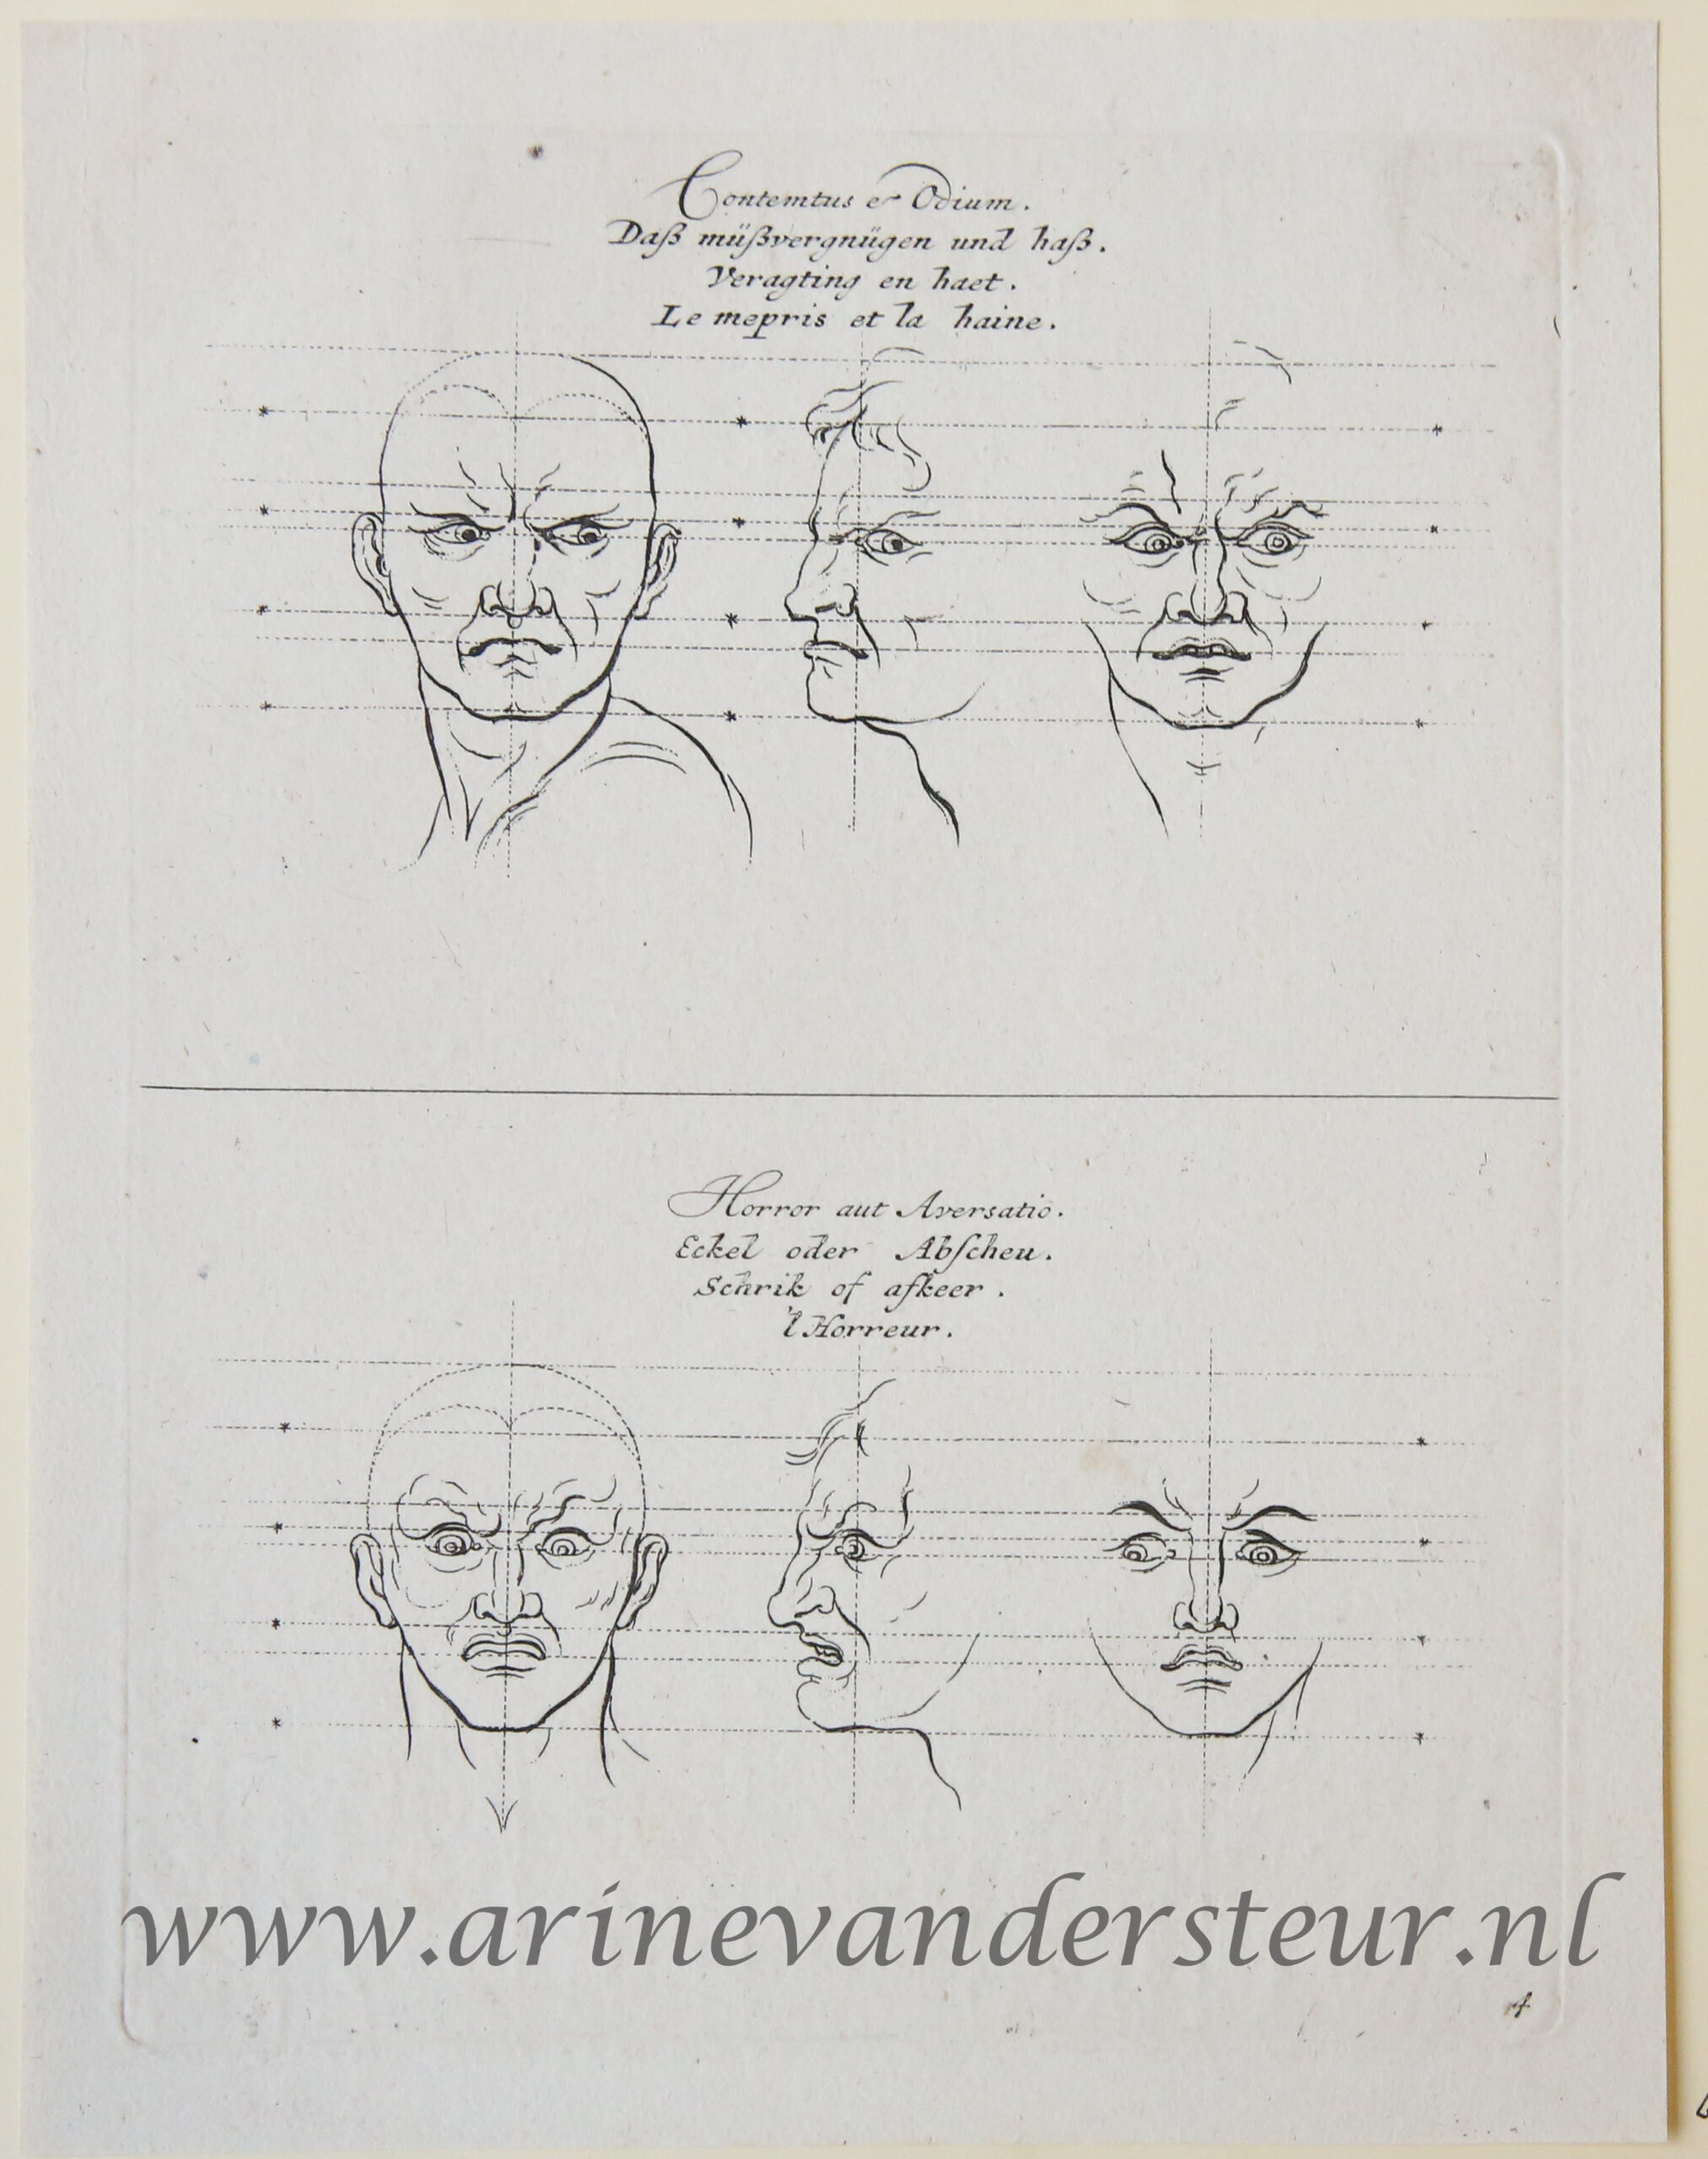 10 original engravings re physiognomy: Effigies et Repraesentatio Affectionum animi juxta delineationes D. [Charles] Le Brun a D. [Sébastien] Clerio aeri incisae.